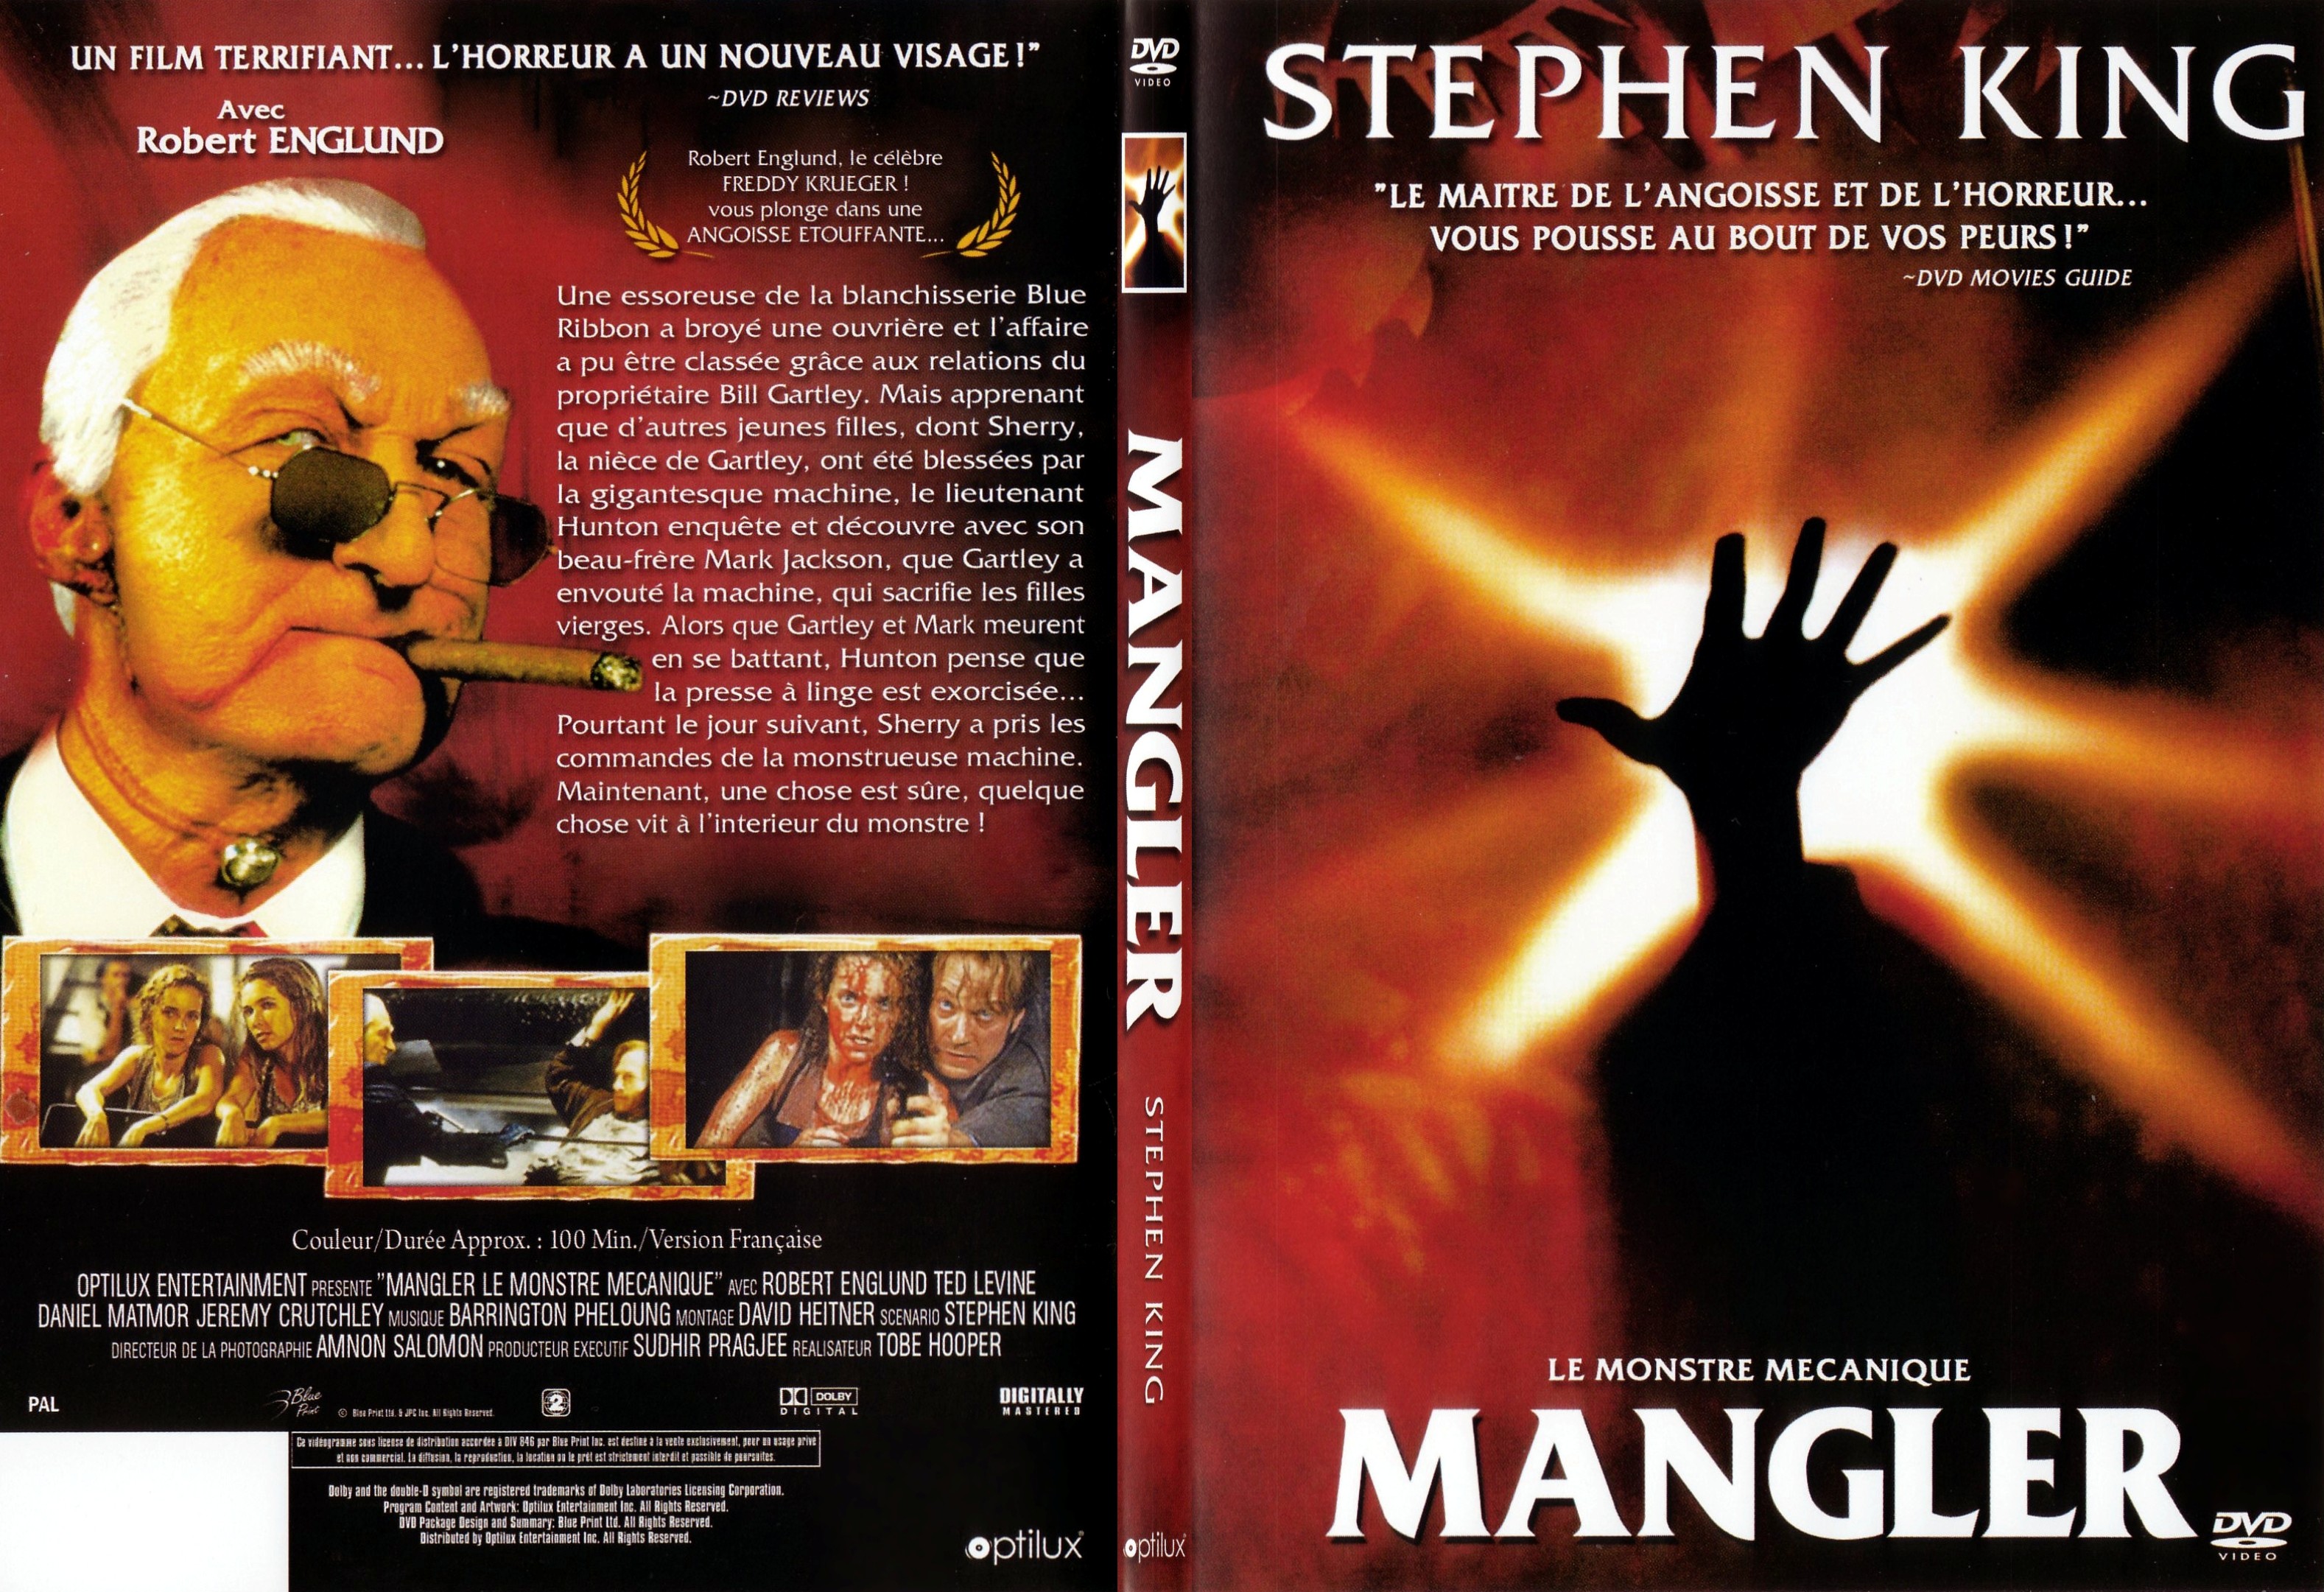 Jaquette DVD The mangler - SLIM